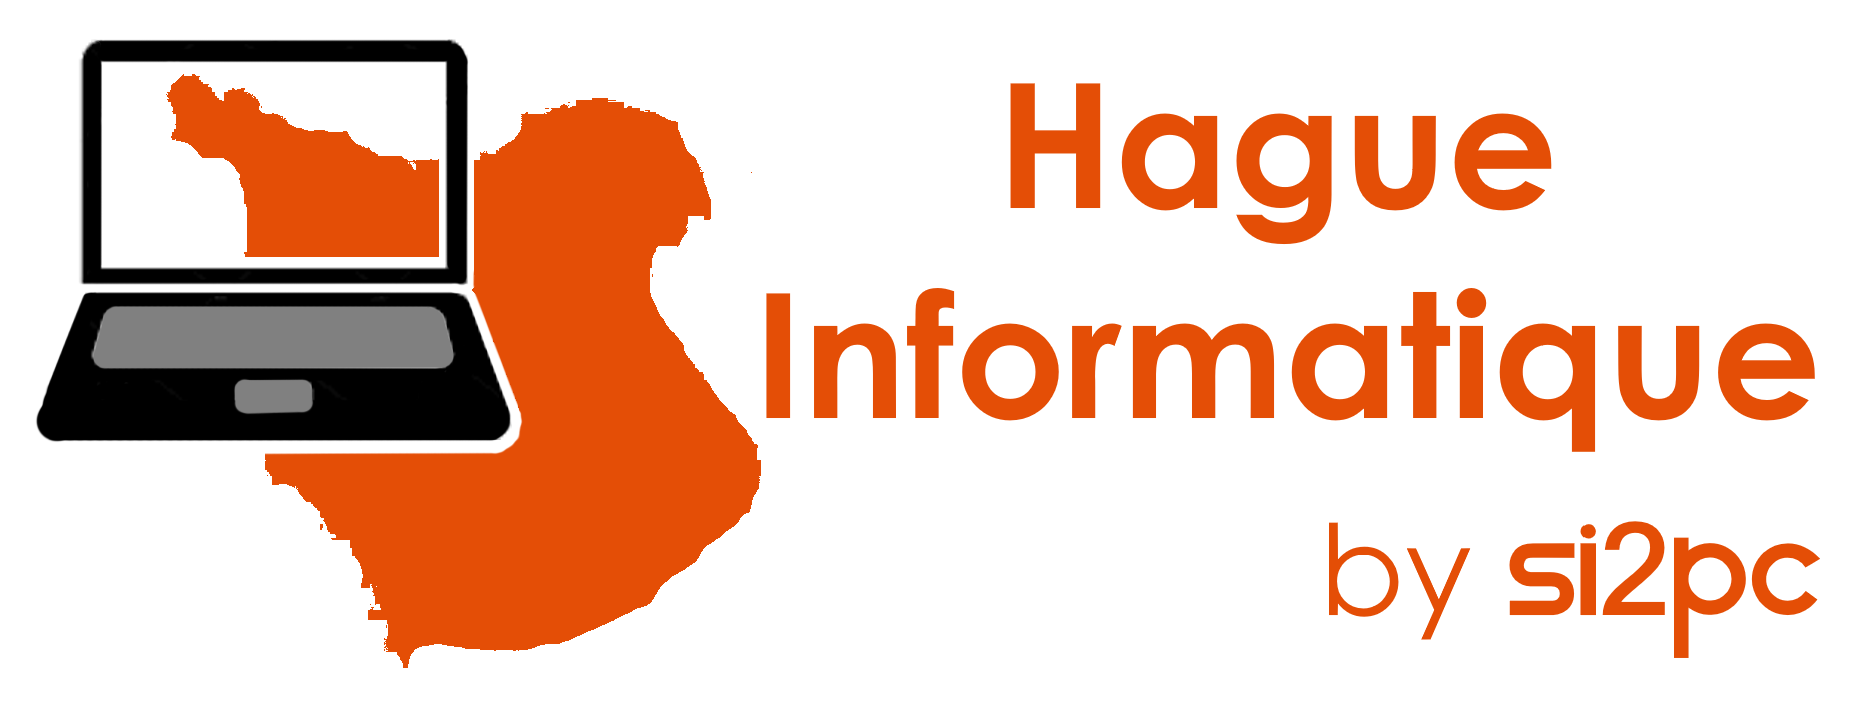 Hague Informatique (SI2PC)